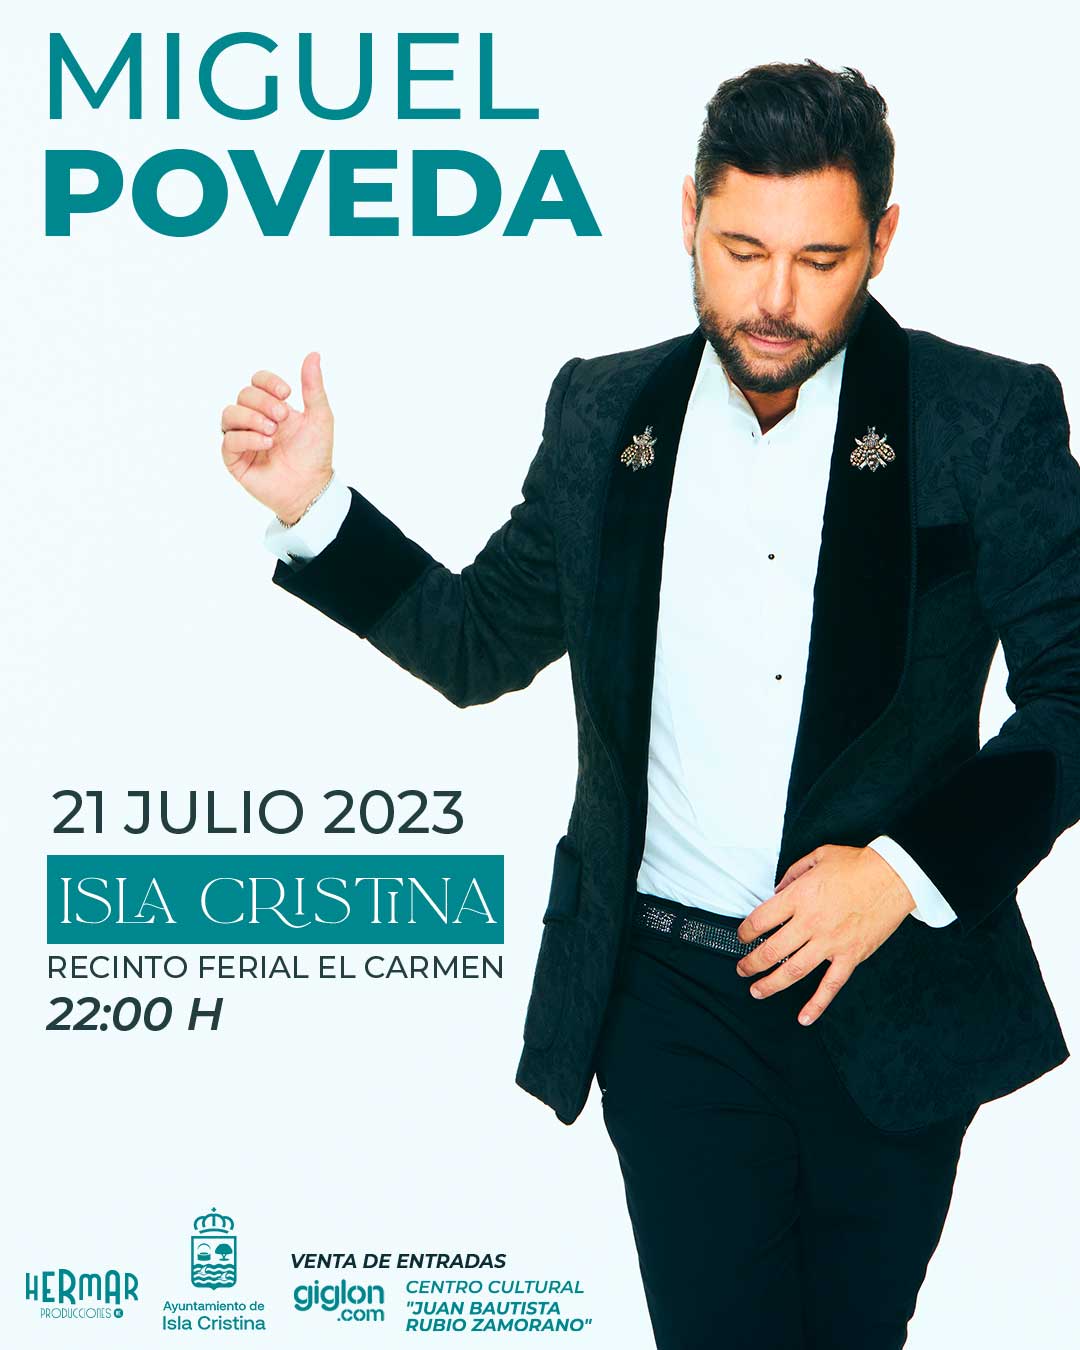 Miguel Poveda 21 de julio en concierto en Isla Cristina Recinto ferial el Carmen 2023